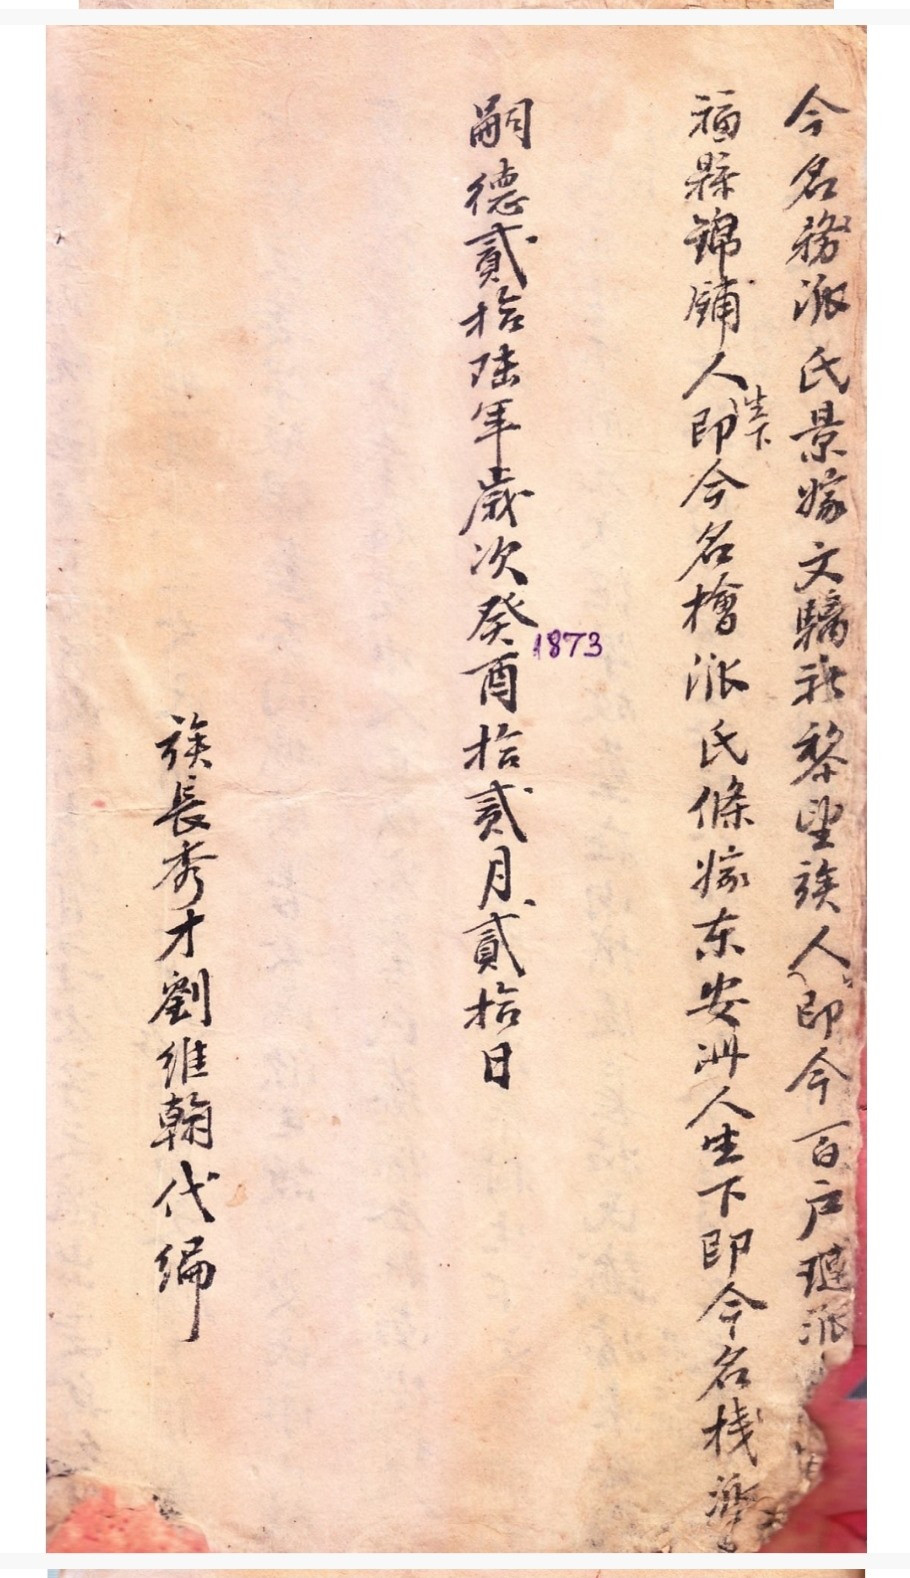 Trang đầu gia phả Lưu tộc do tú tài Lưu Duy Hàn biên soạn.